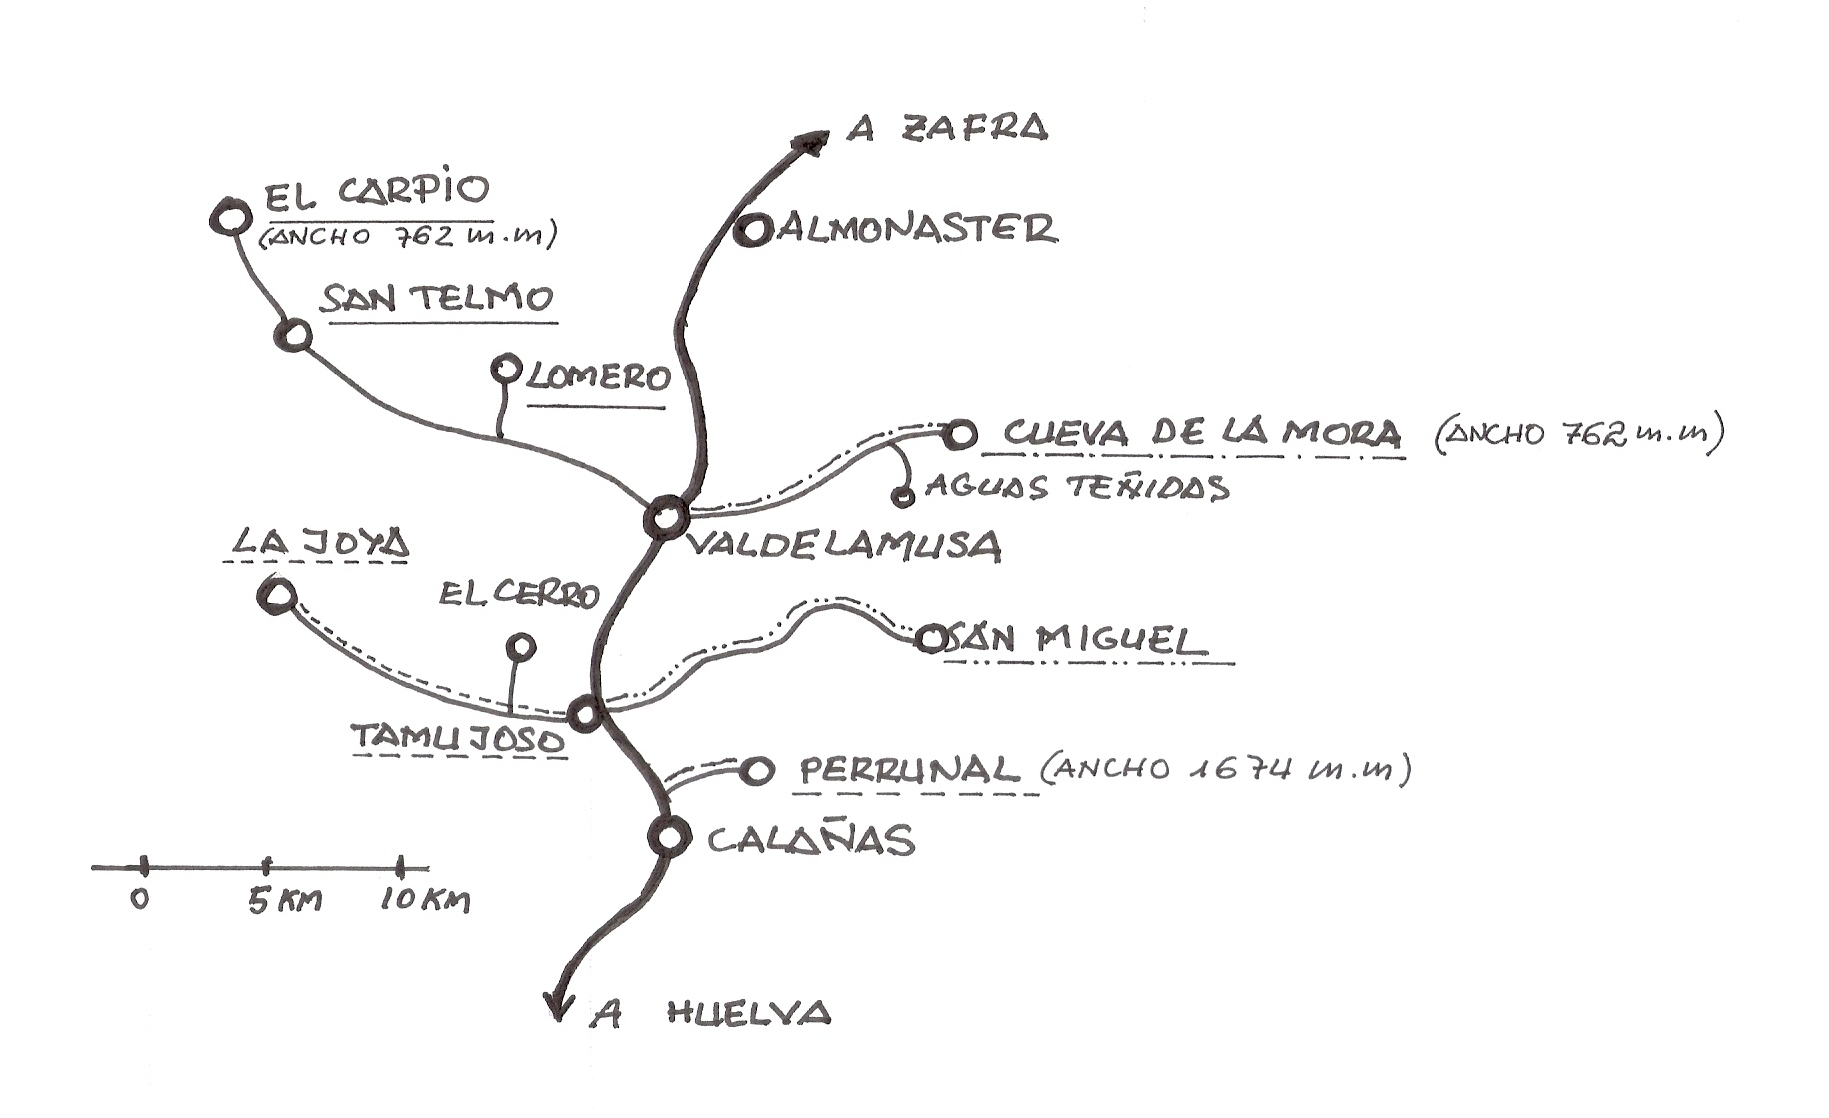 Equema de las lineas mineras que confluyen en el Zafra-Huelva, dibujo